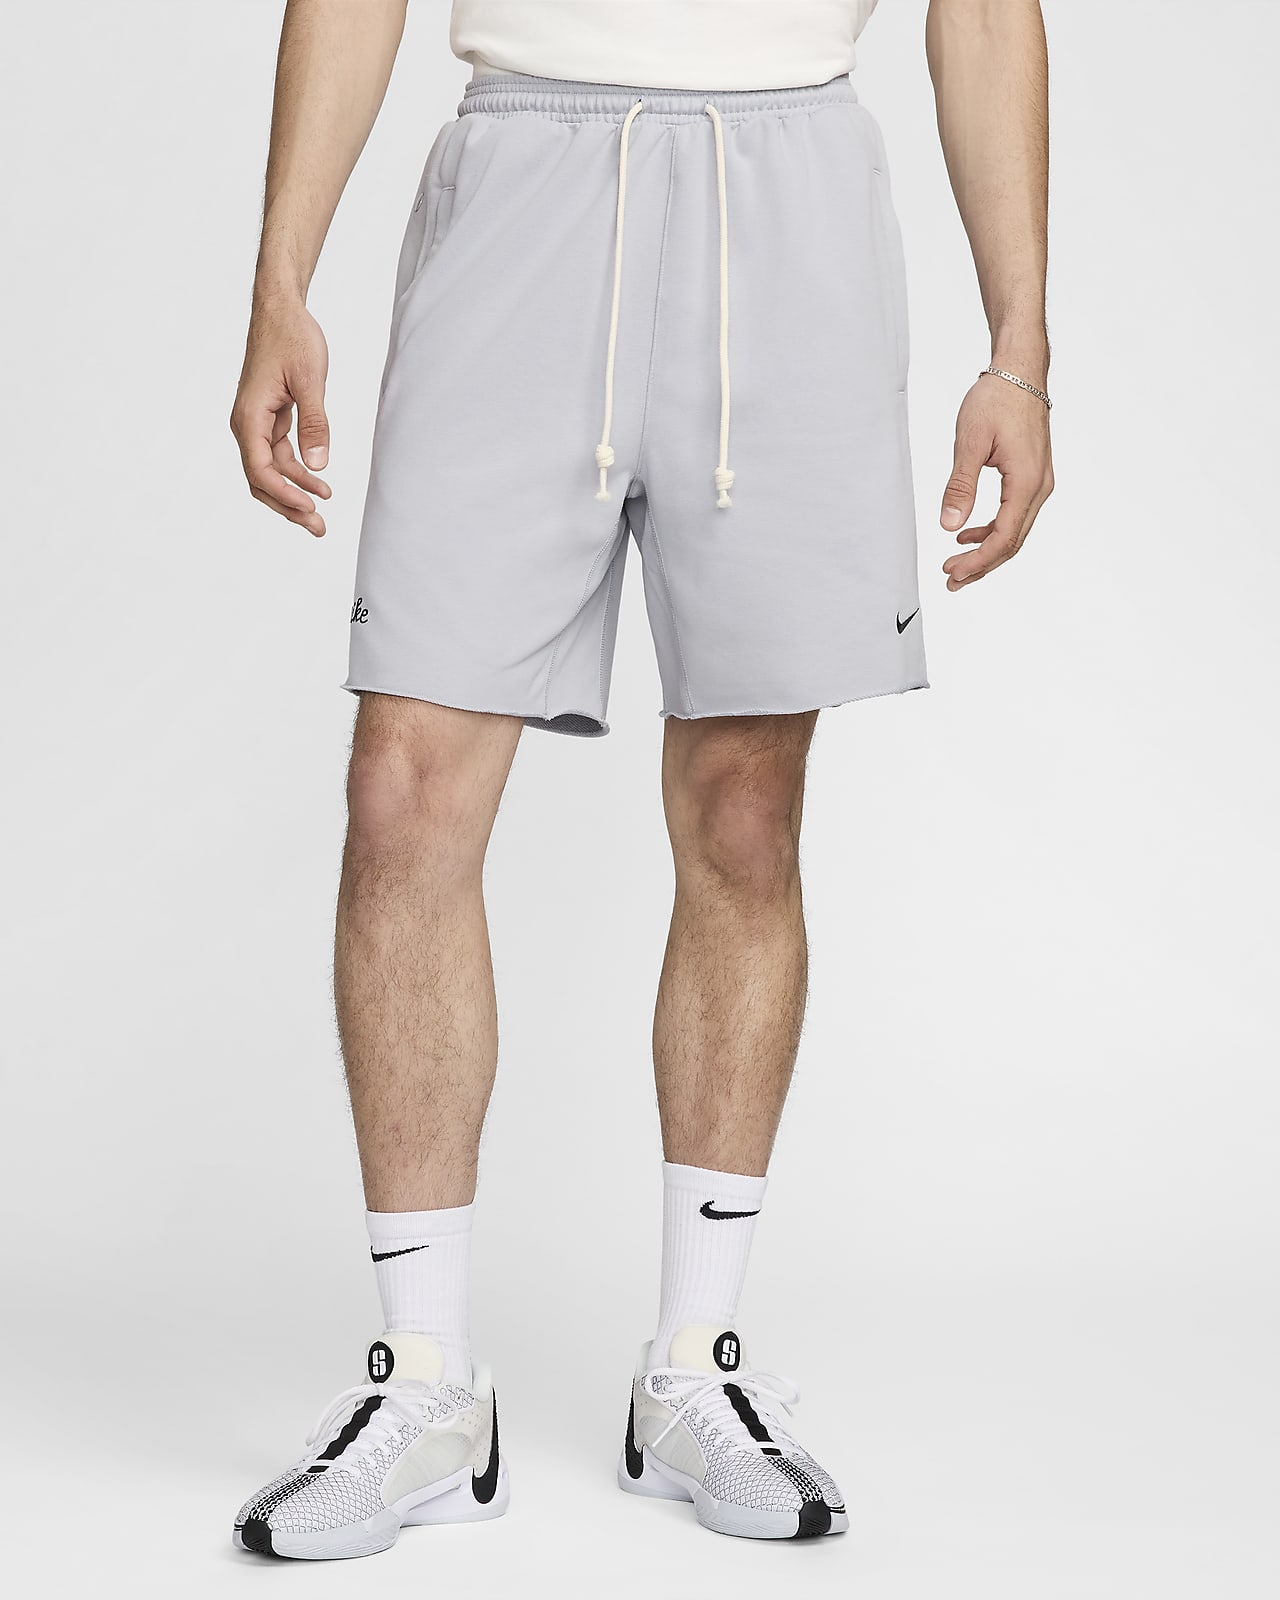 Calções de basquetebol Dri-FIT de 20 cm Nike Standard Issue para homem